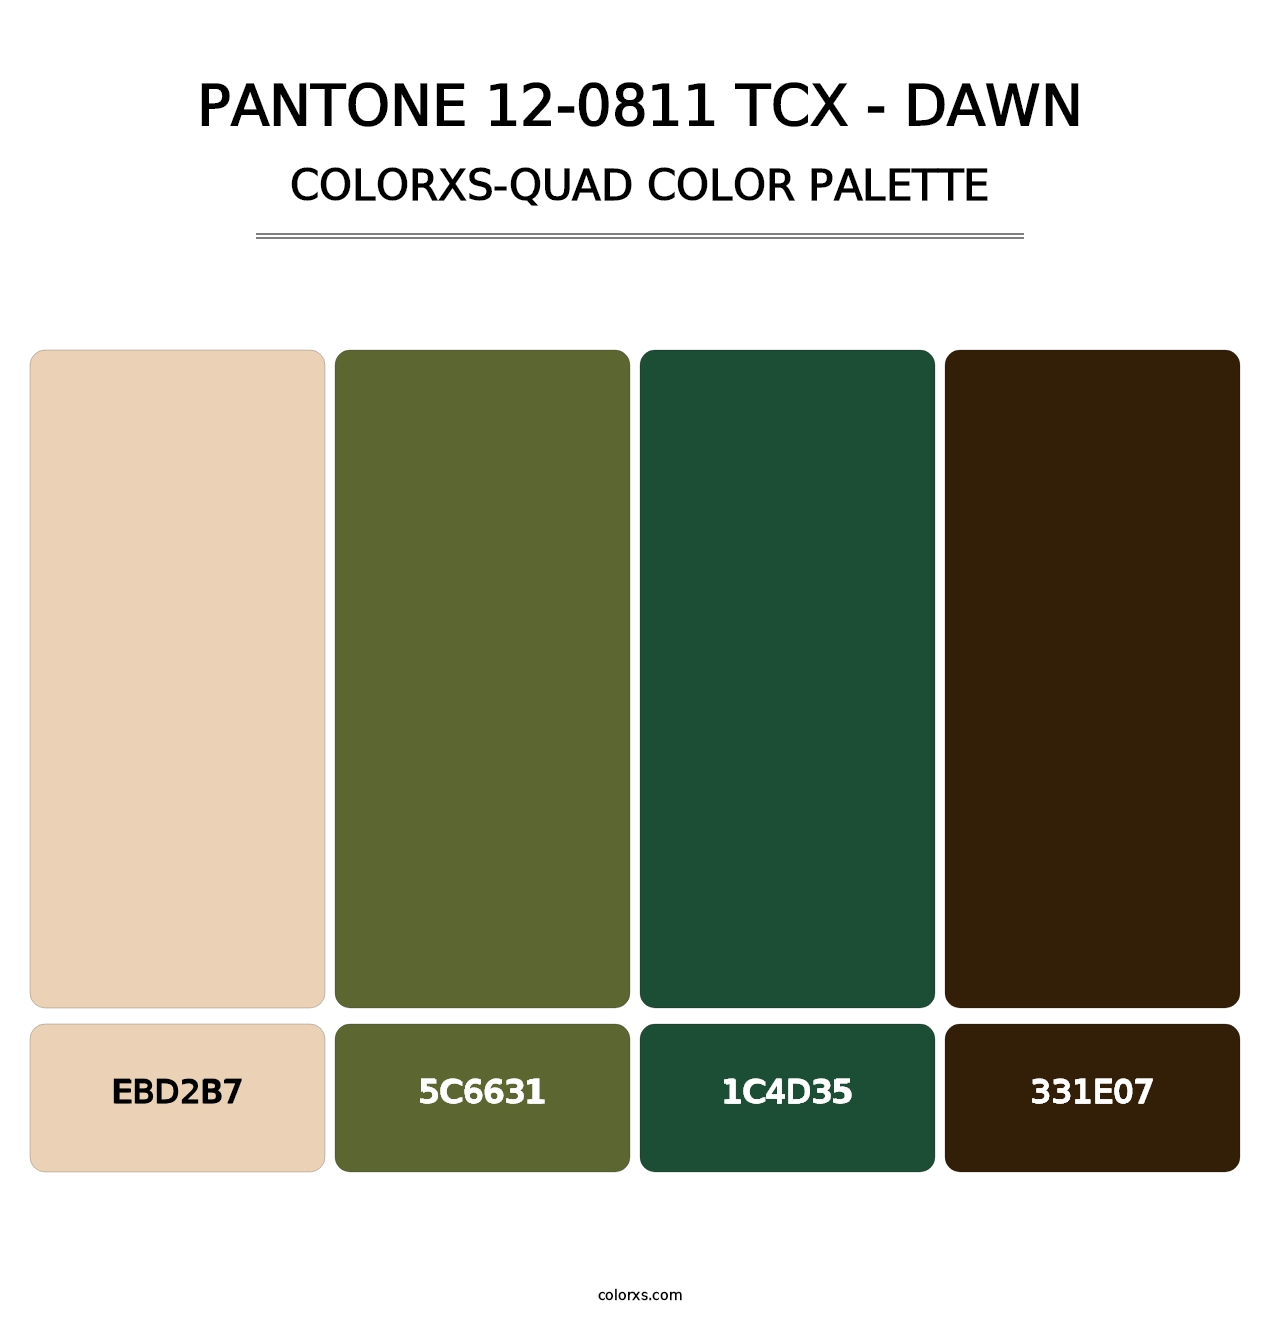 PANTONE 12-0811 TCX - Dawn - Colorxs Quad Palette